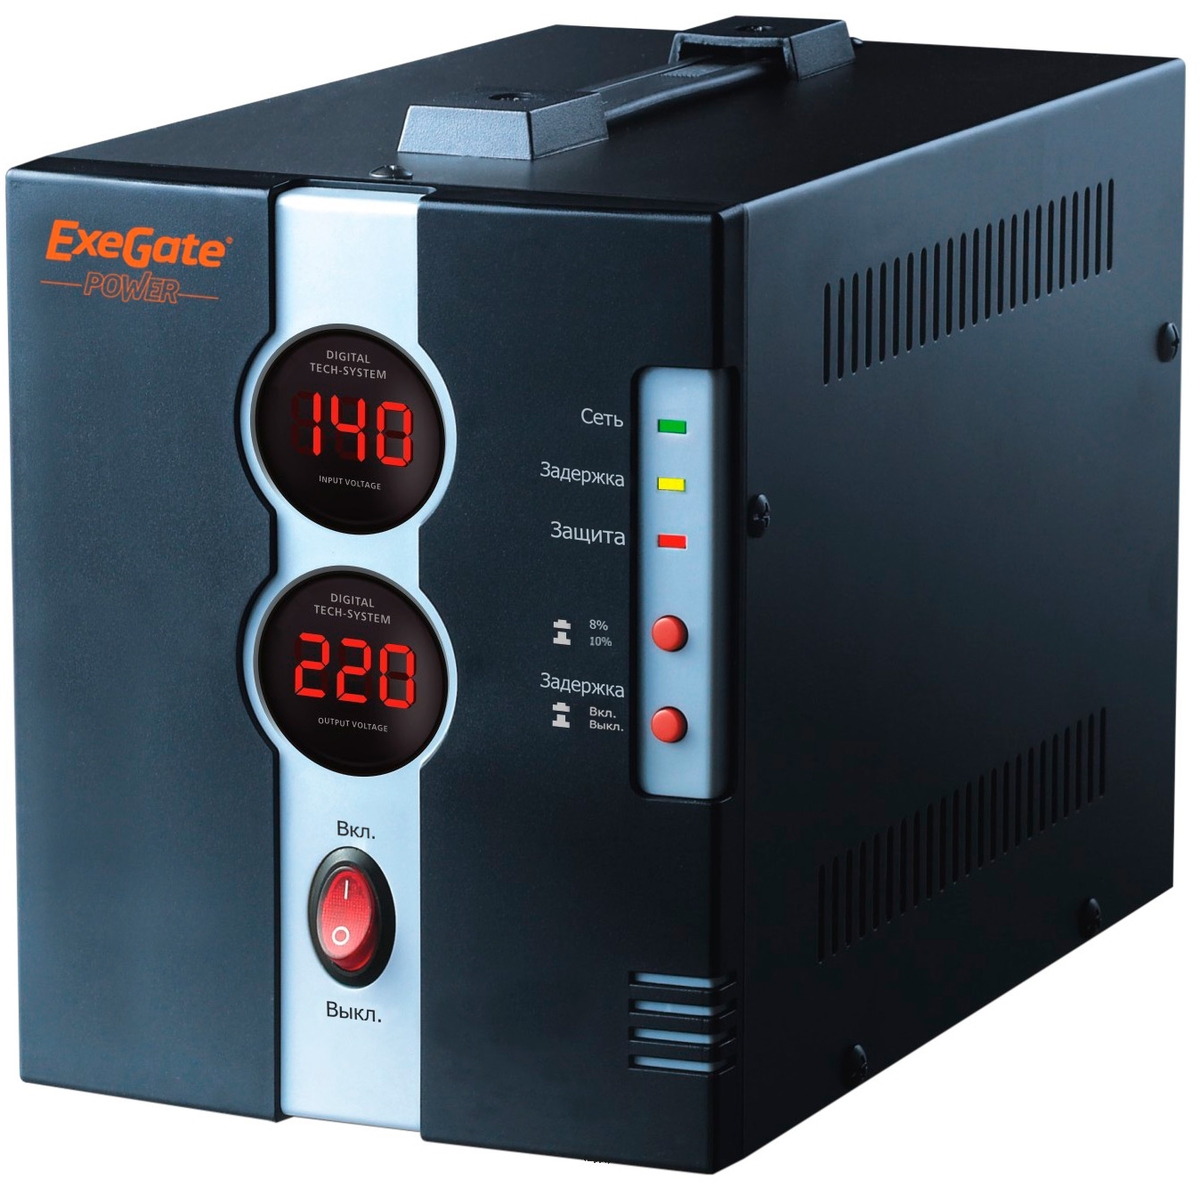  ExeGate Power DCR-2000D